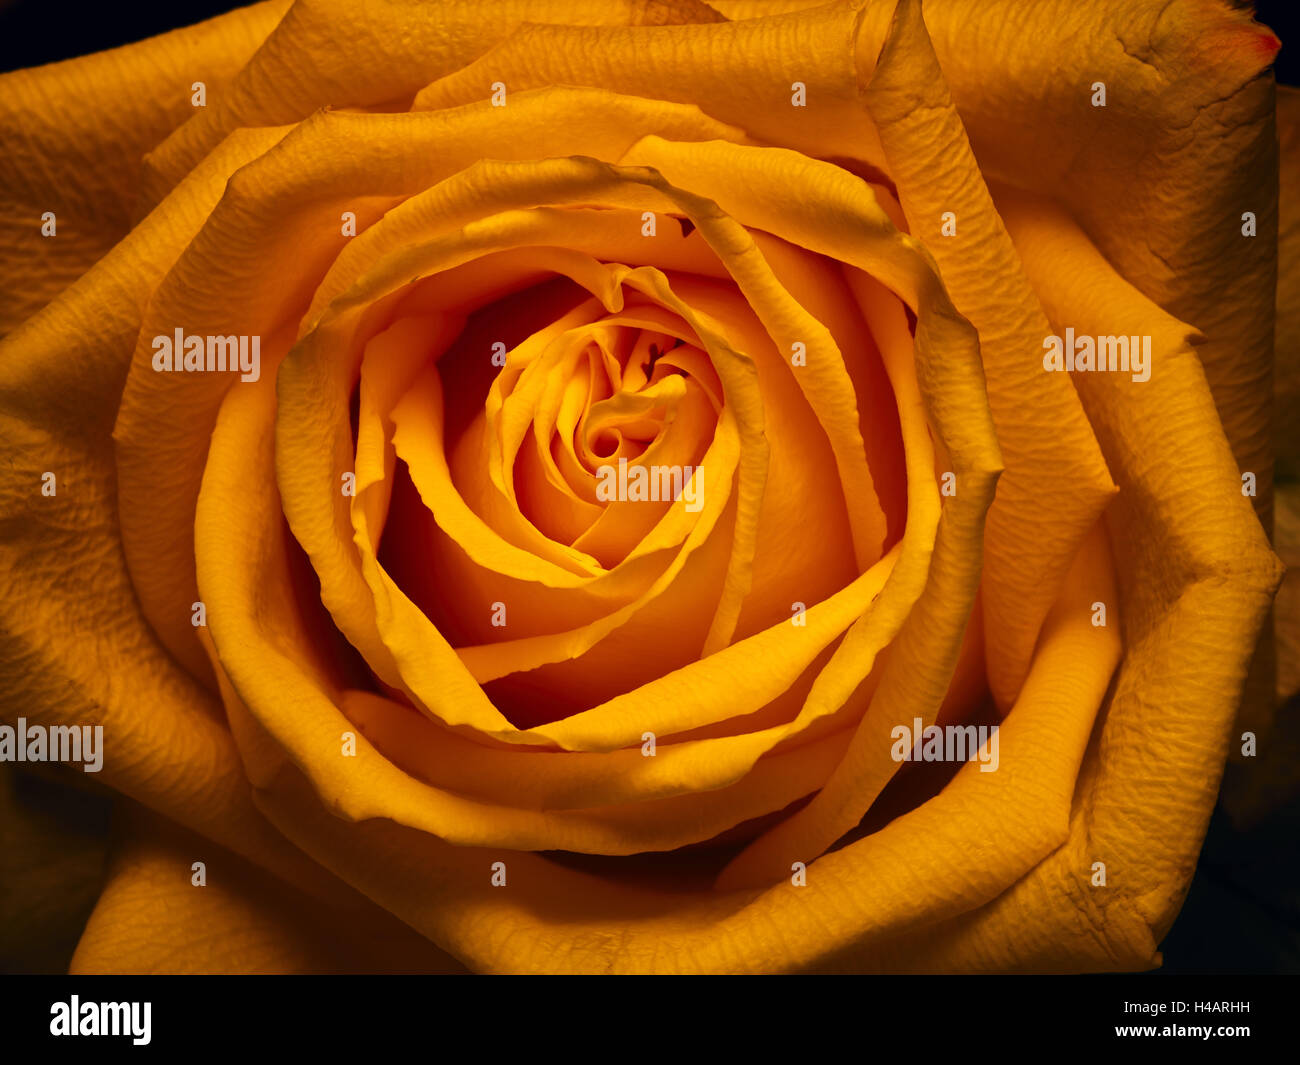 Rose, oranger, jaune, orange, close-up, Banque D'Images